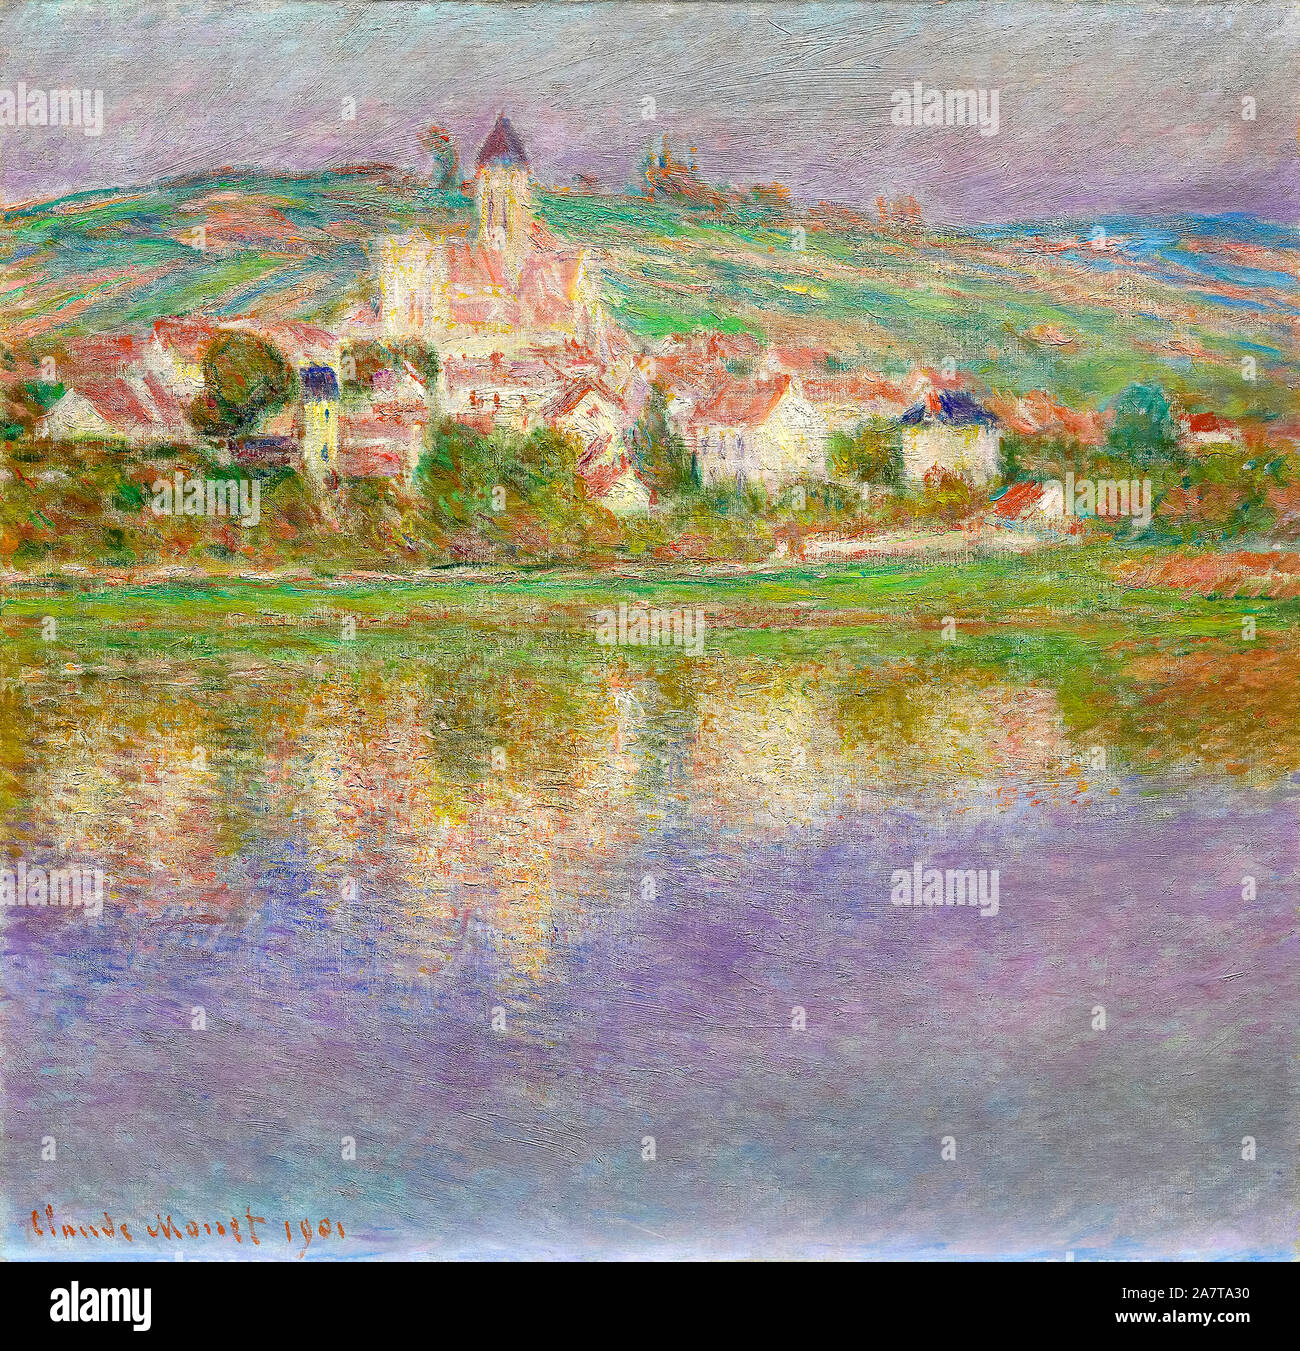 Claude Monet, Vétheuil, Landschaftsmalerei, 1901 Stockfoto